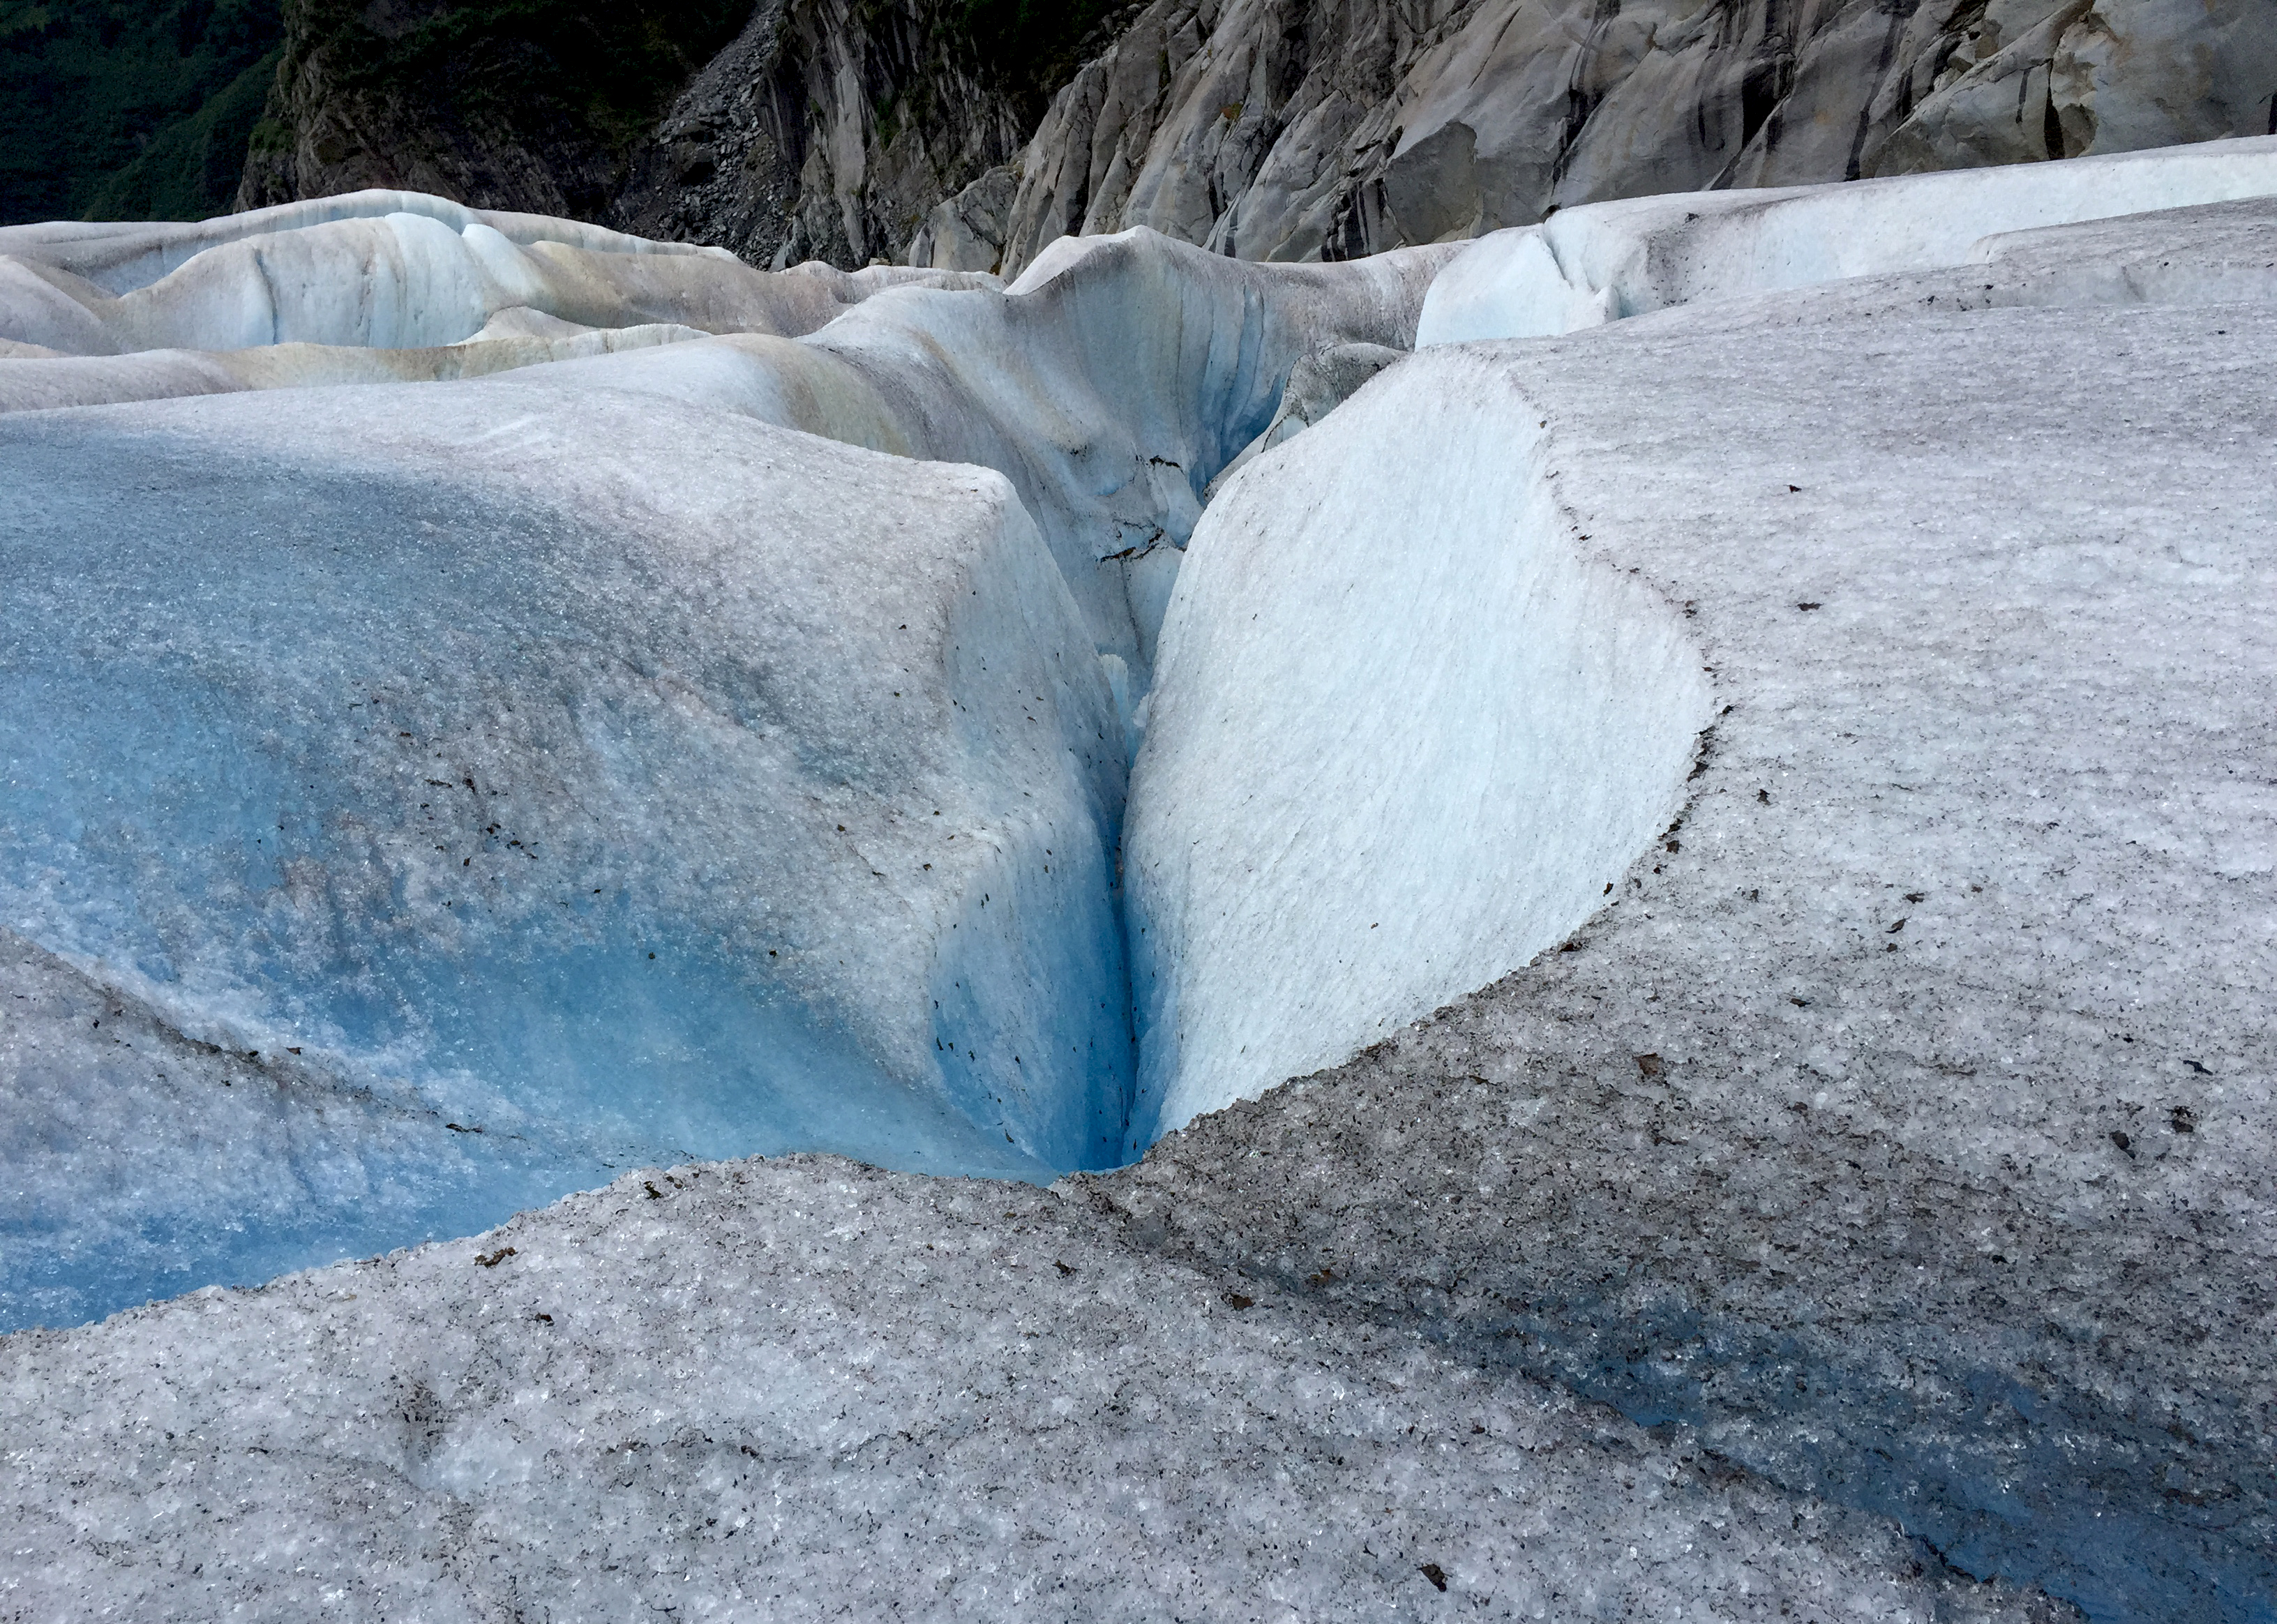 Mendenhall Glacier in Alaska